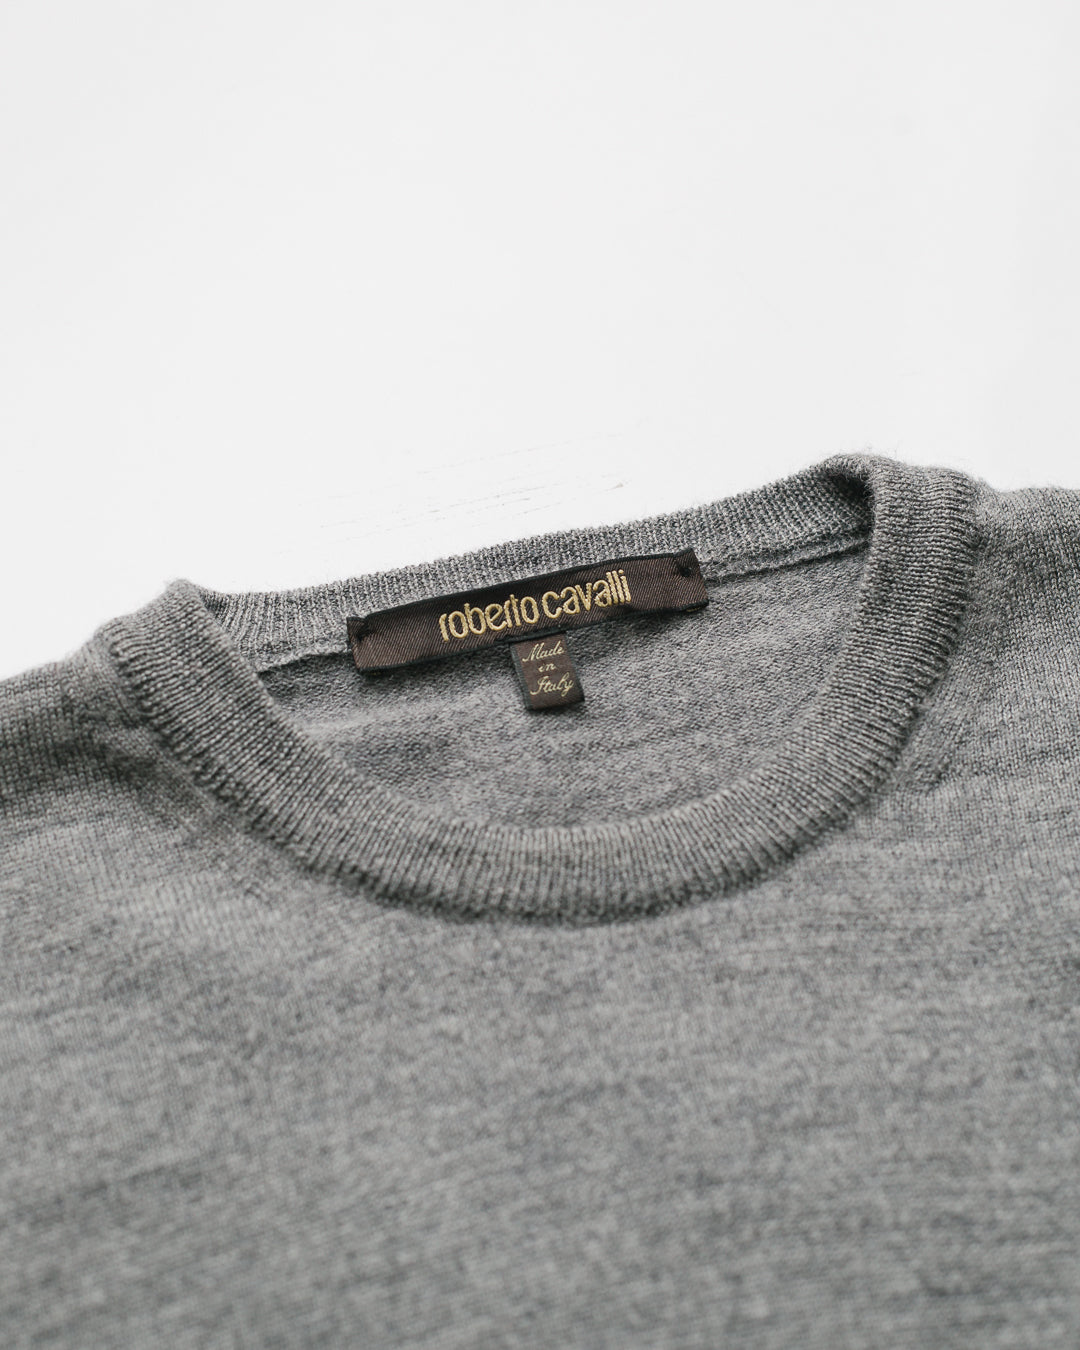 Roberto Cavalli Emblem Knit Sweater